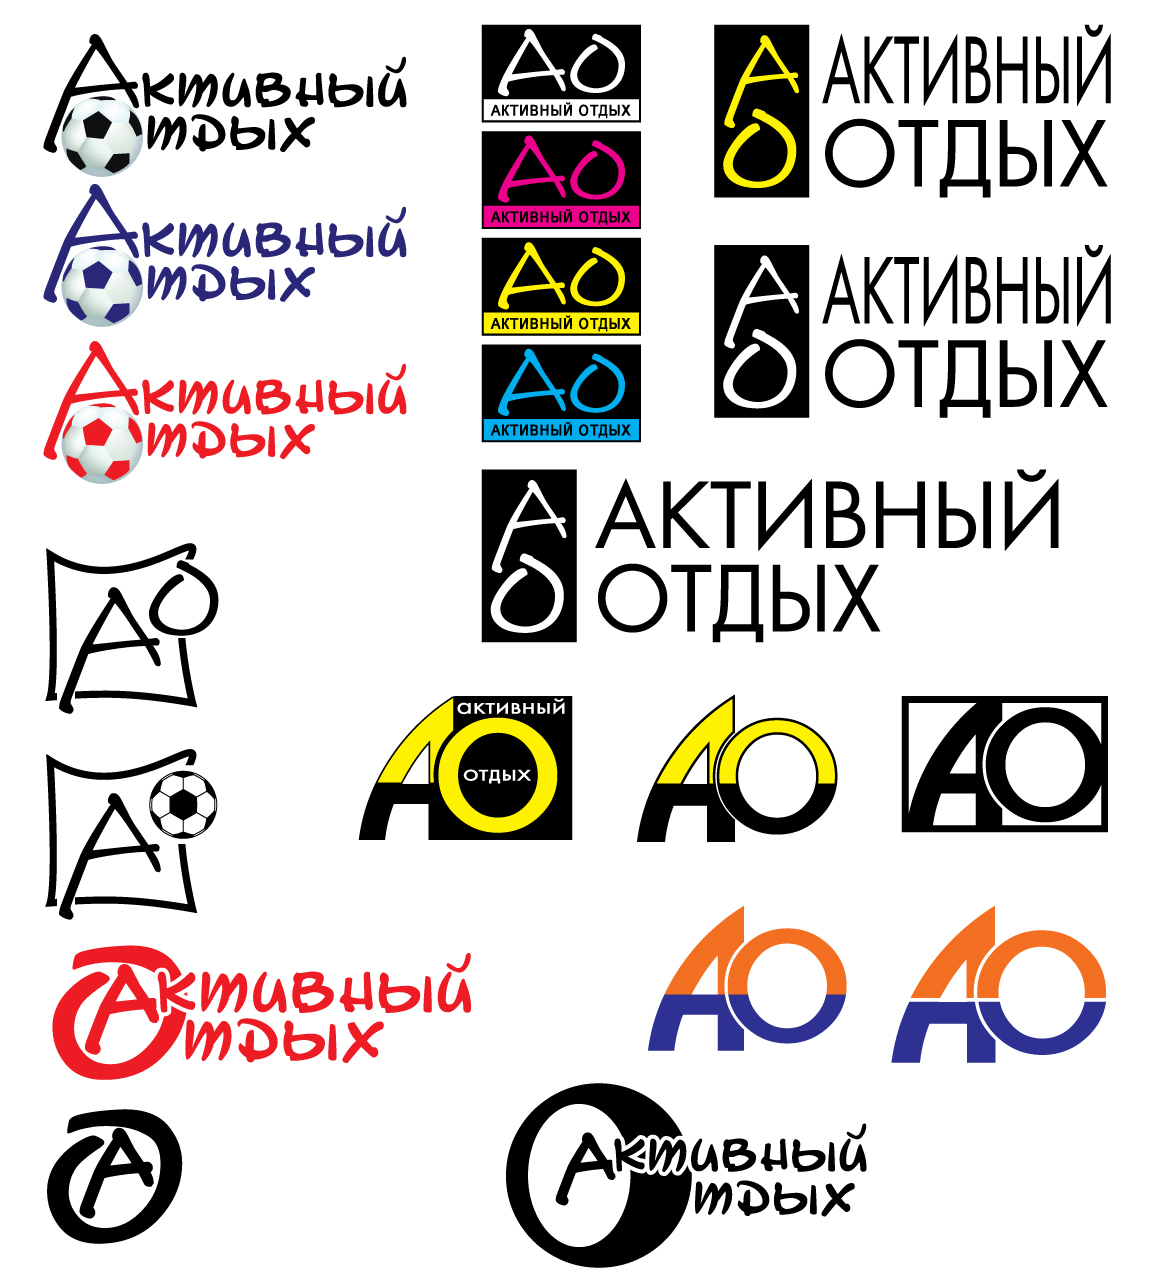 разработка логотипа для магазина "Активный отдых"